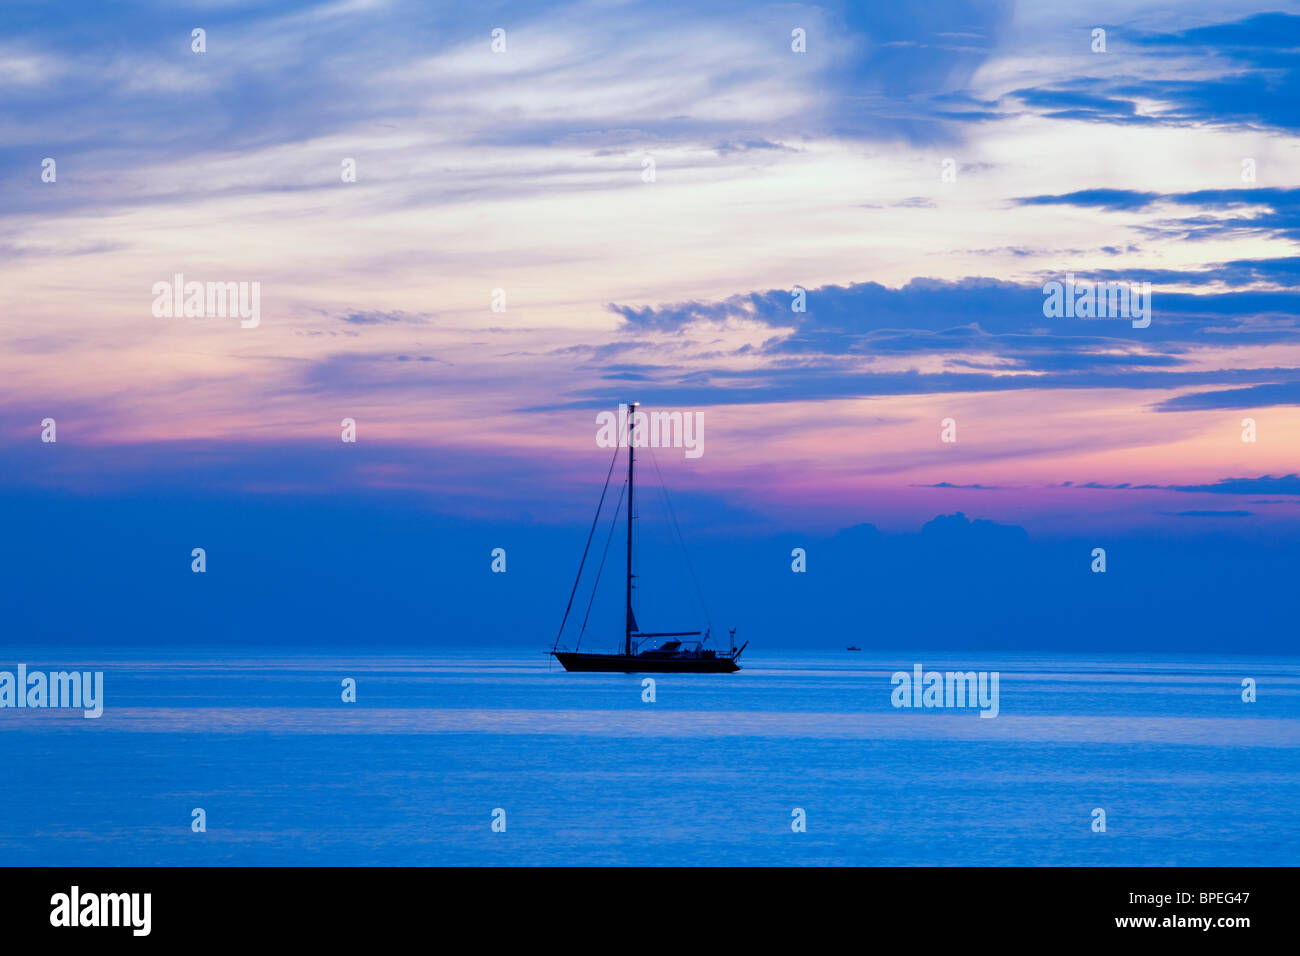 Croazia, mare adriatico - ancorato in barca a vela al tramonto Foto Stock